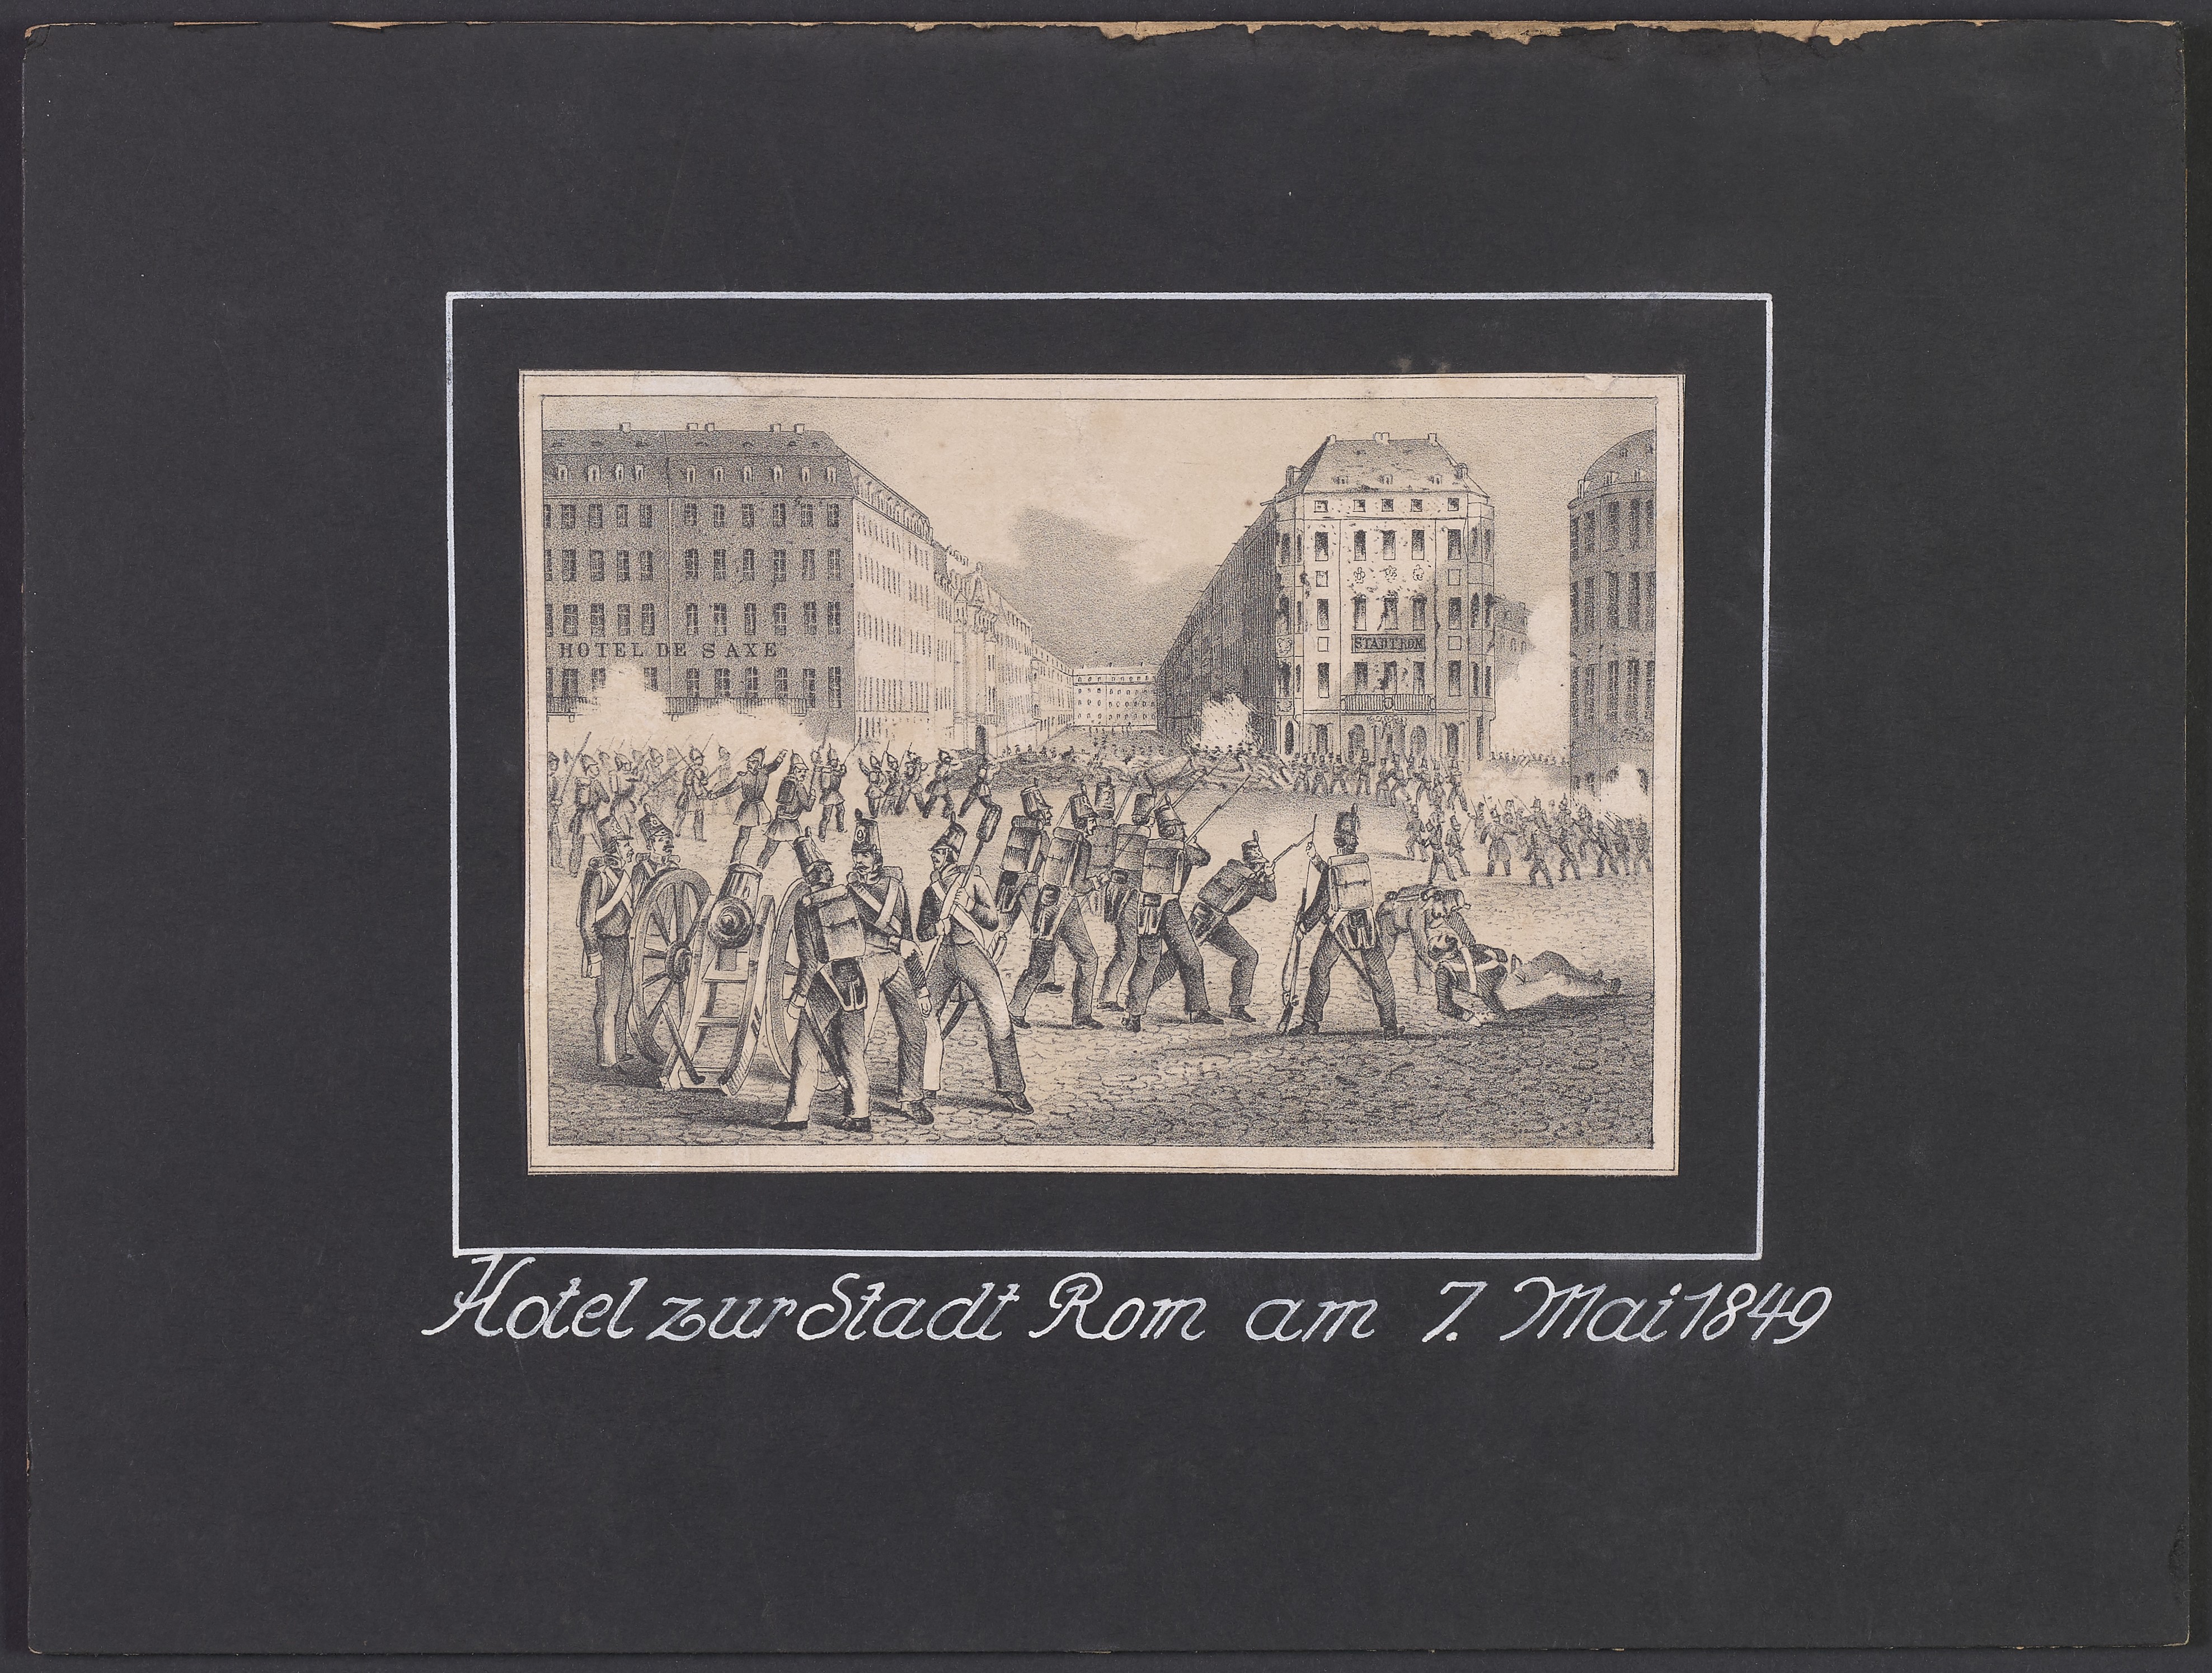 Lehrtafel "Hotel zur Stadt Rom am 7. Mai 1849" (Polizeidirektion Dresden RR-F)